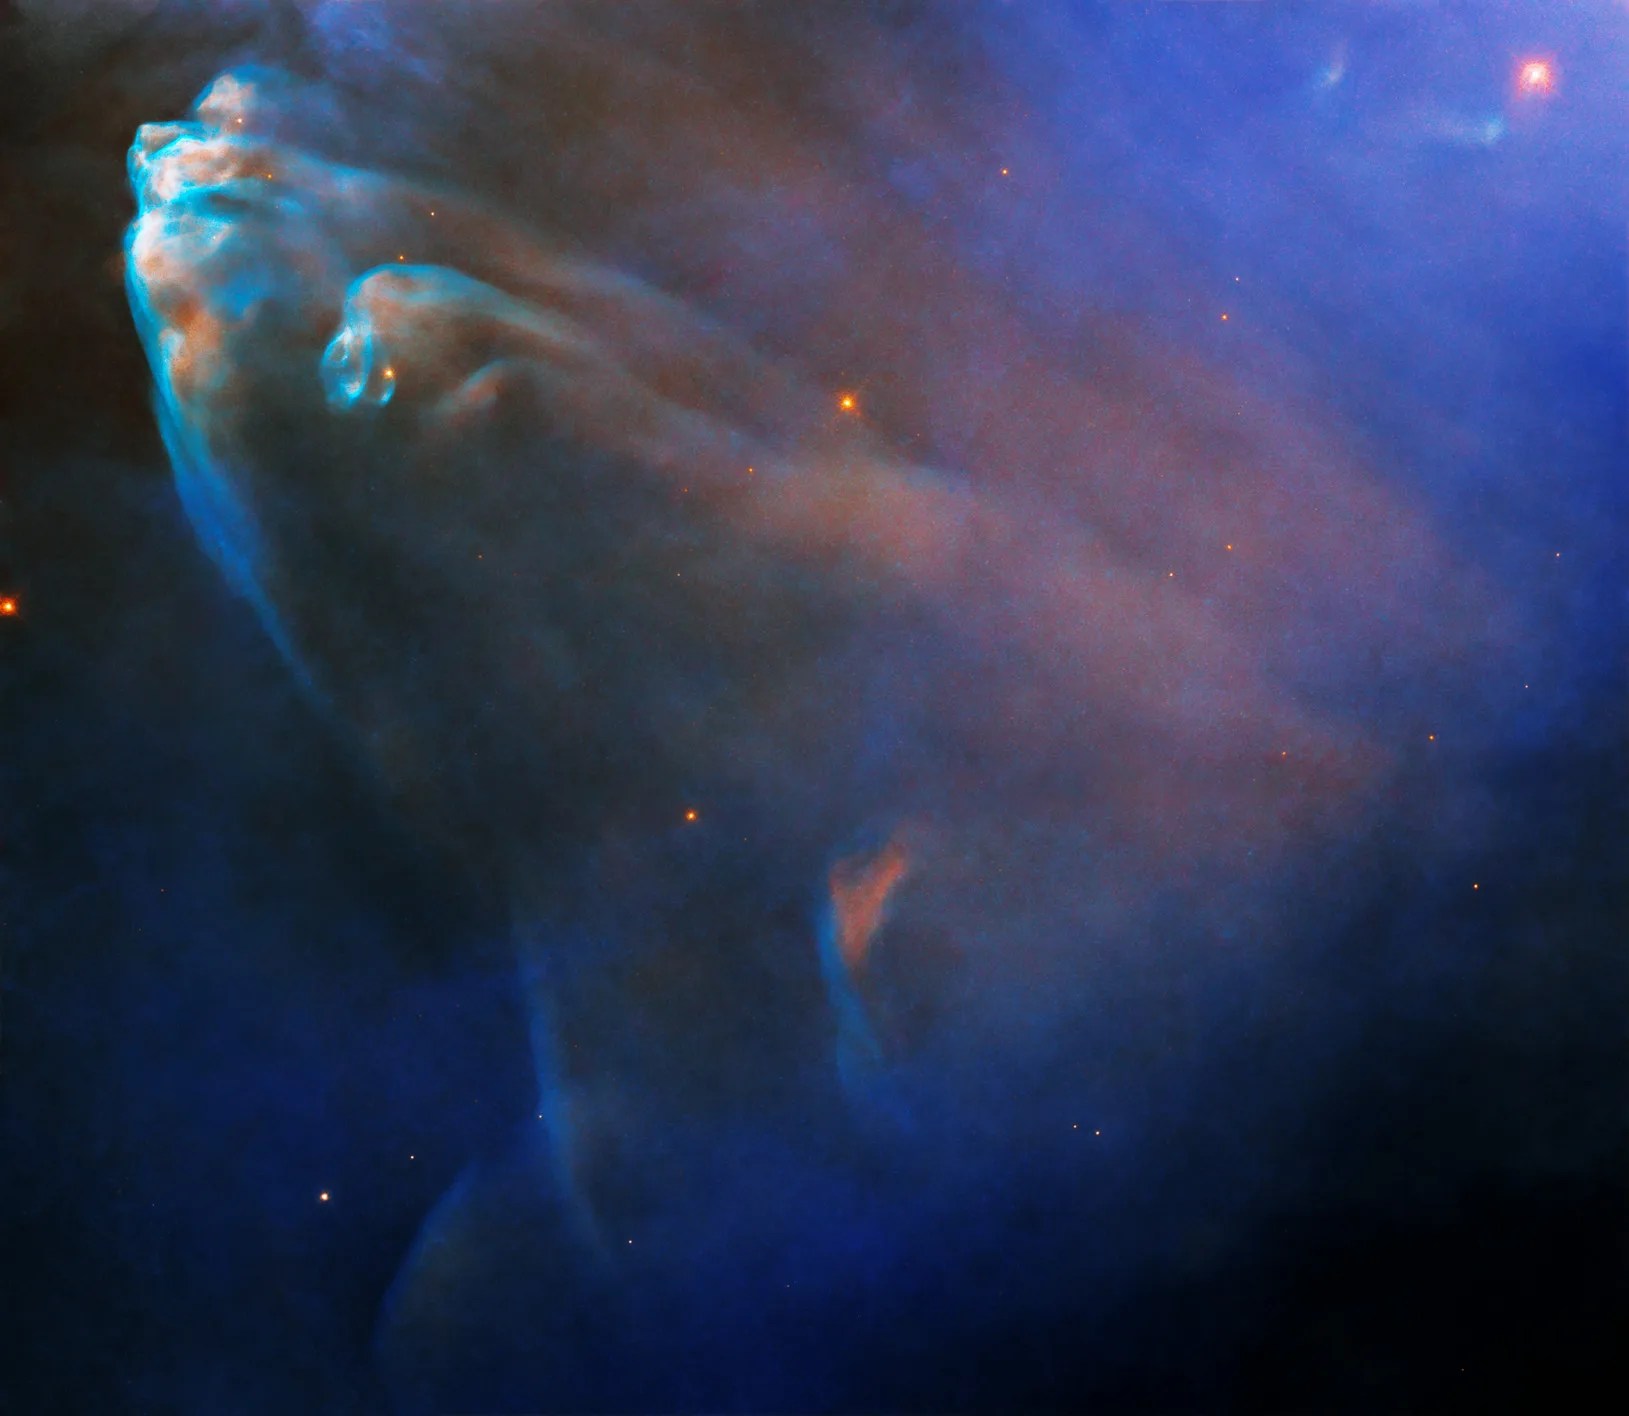 Hubble image of elongated rusty and blue nebula